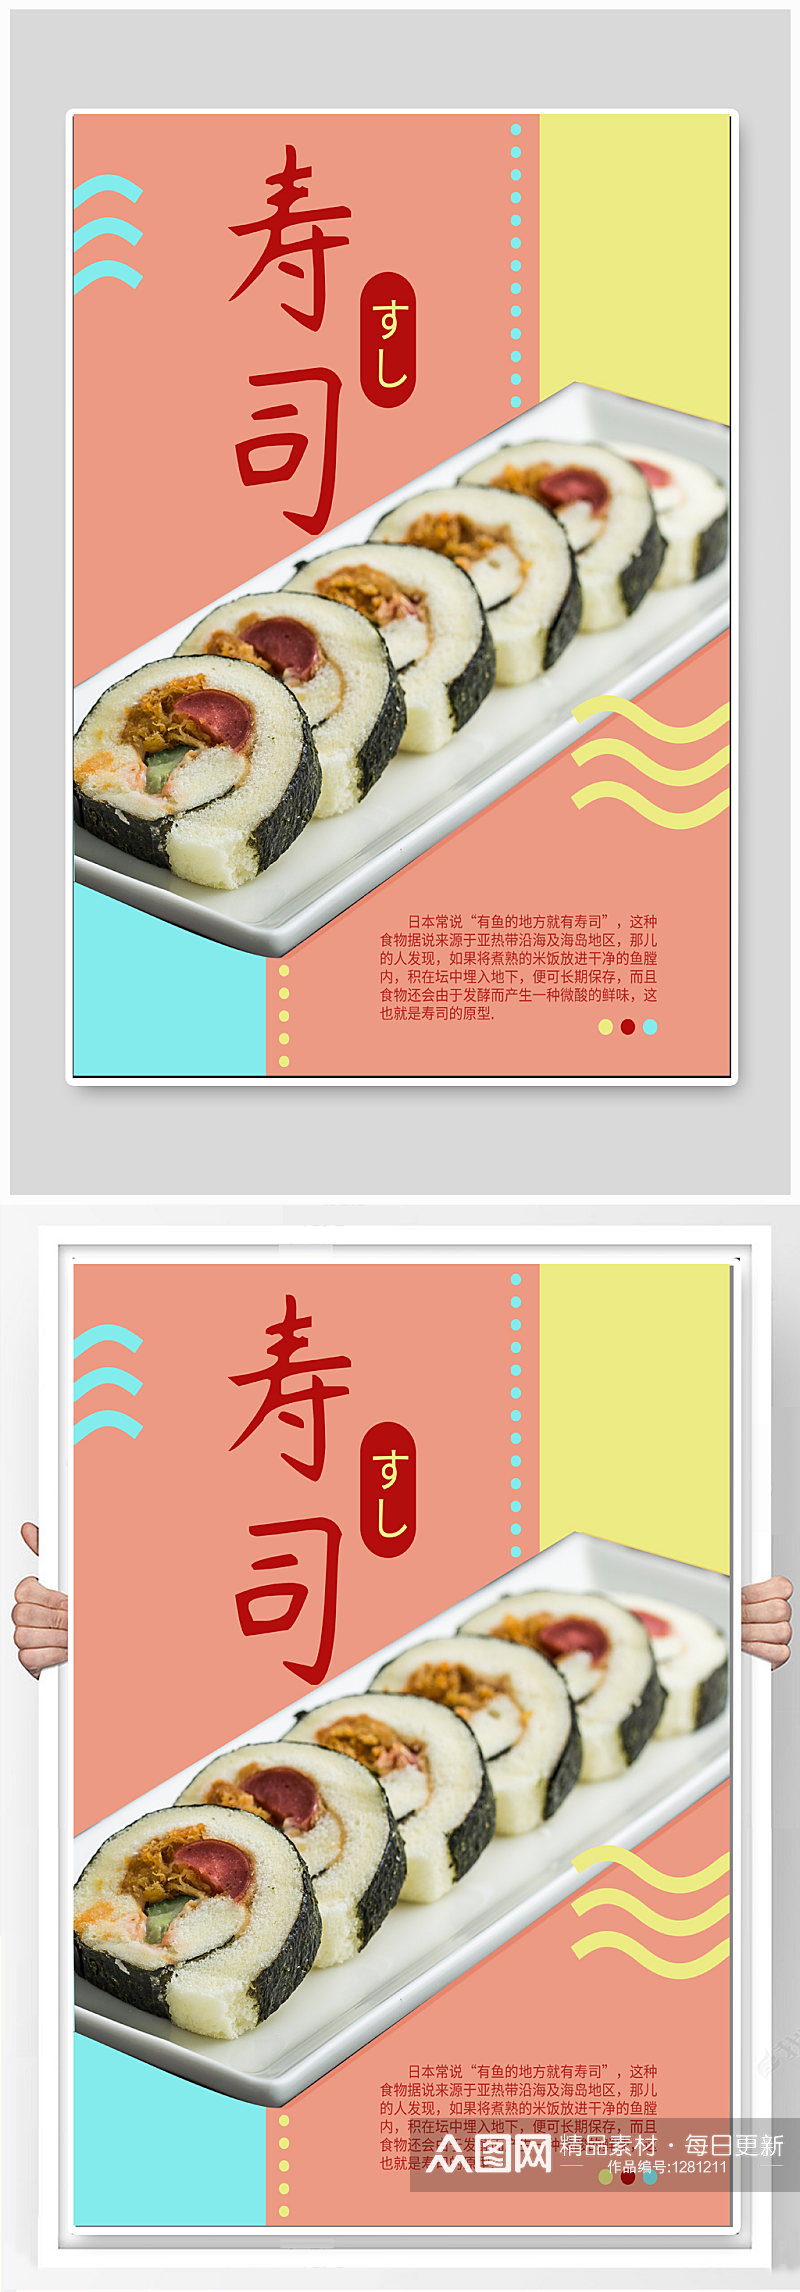 寿司日料美食海报素材